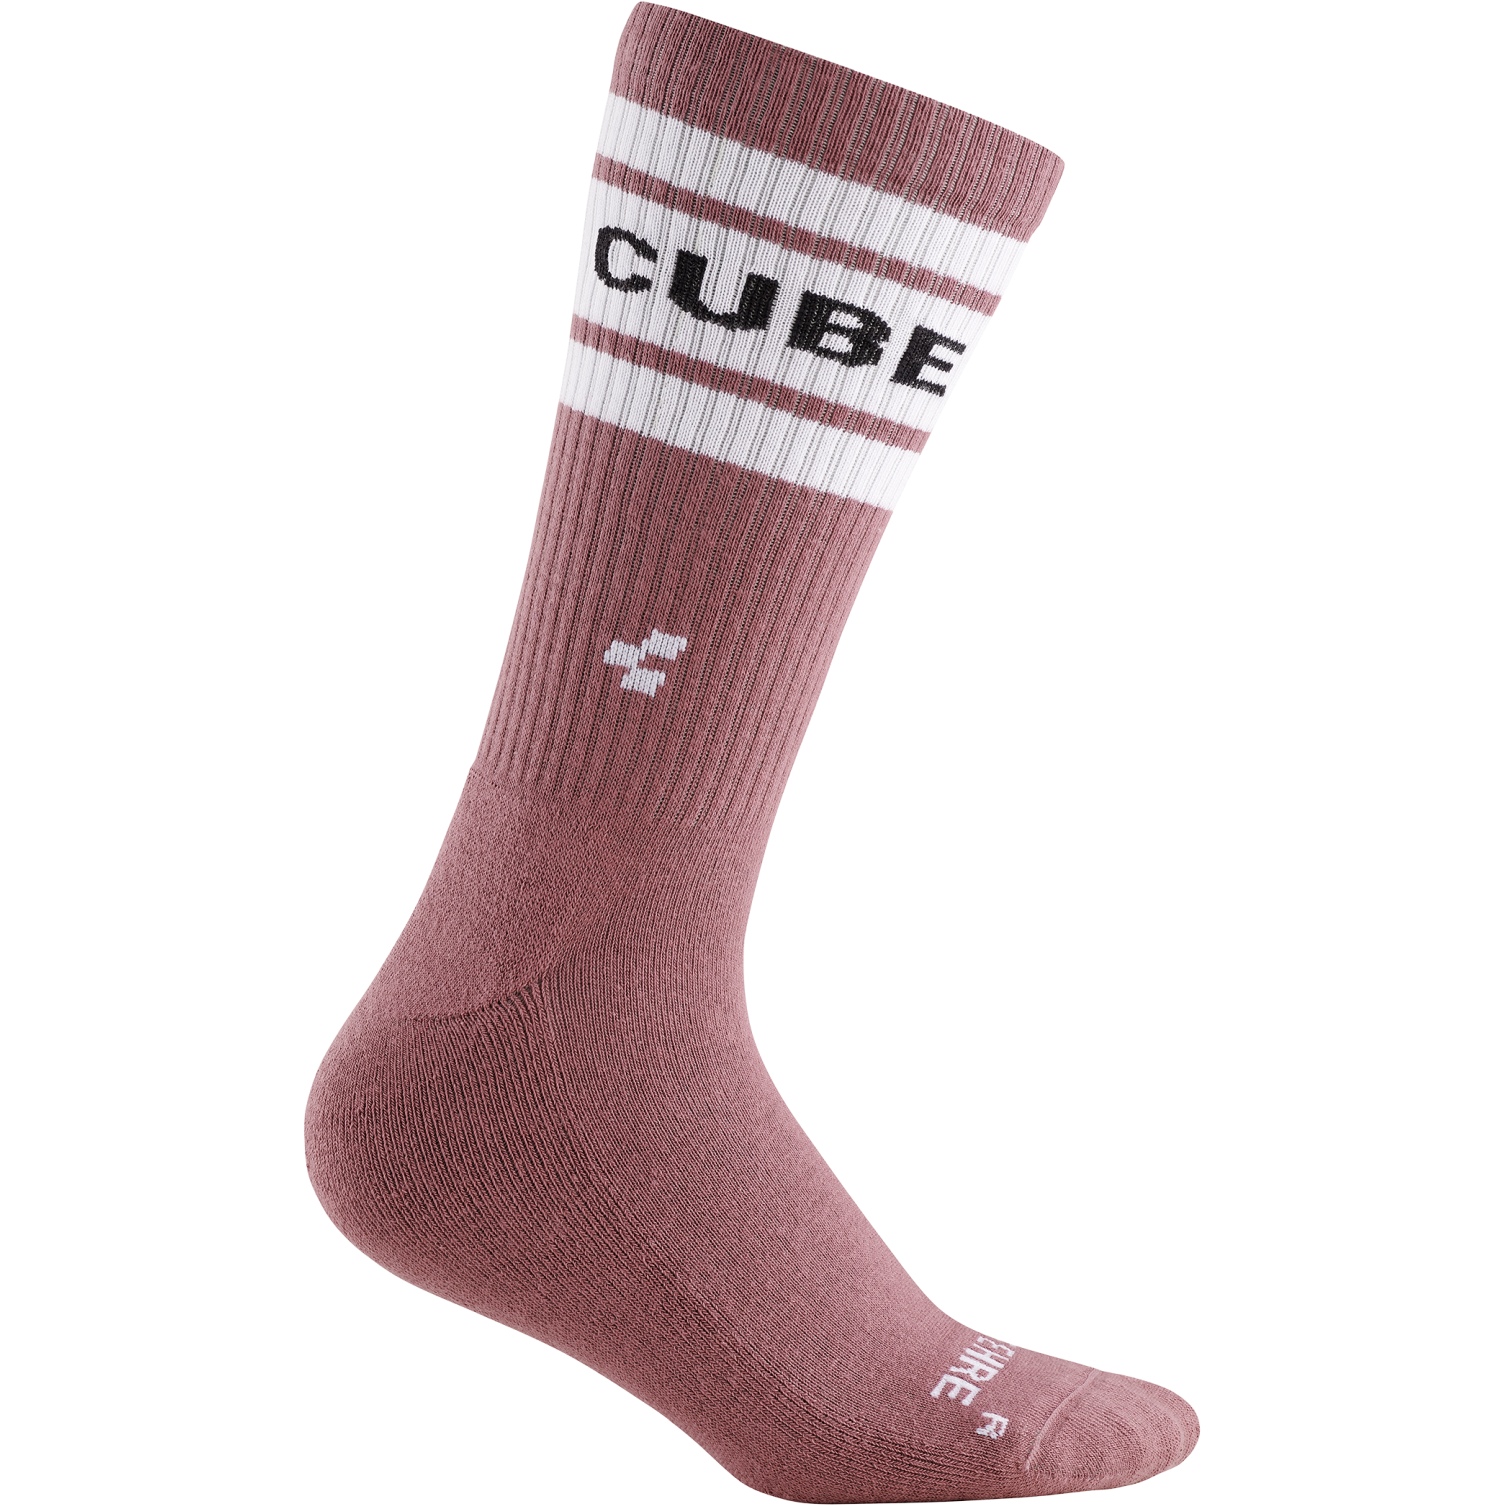 Bild von CUBE After Race High Cut Socken - light red